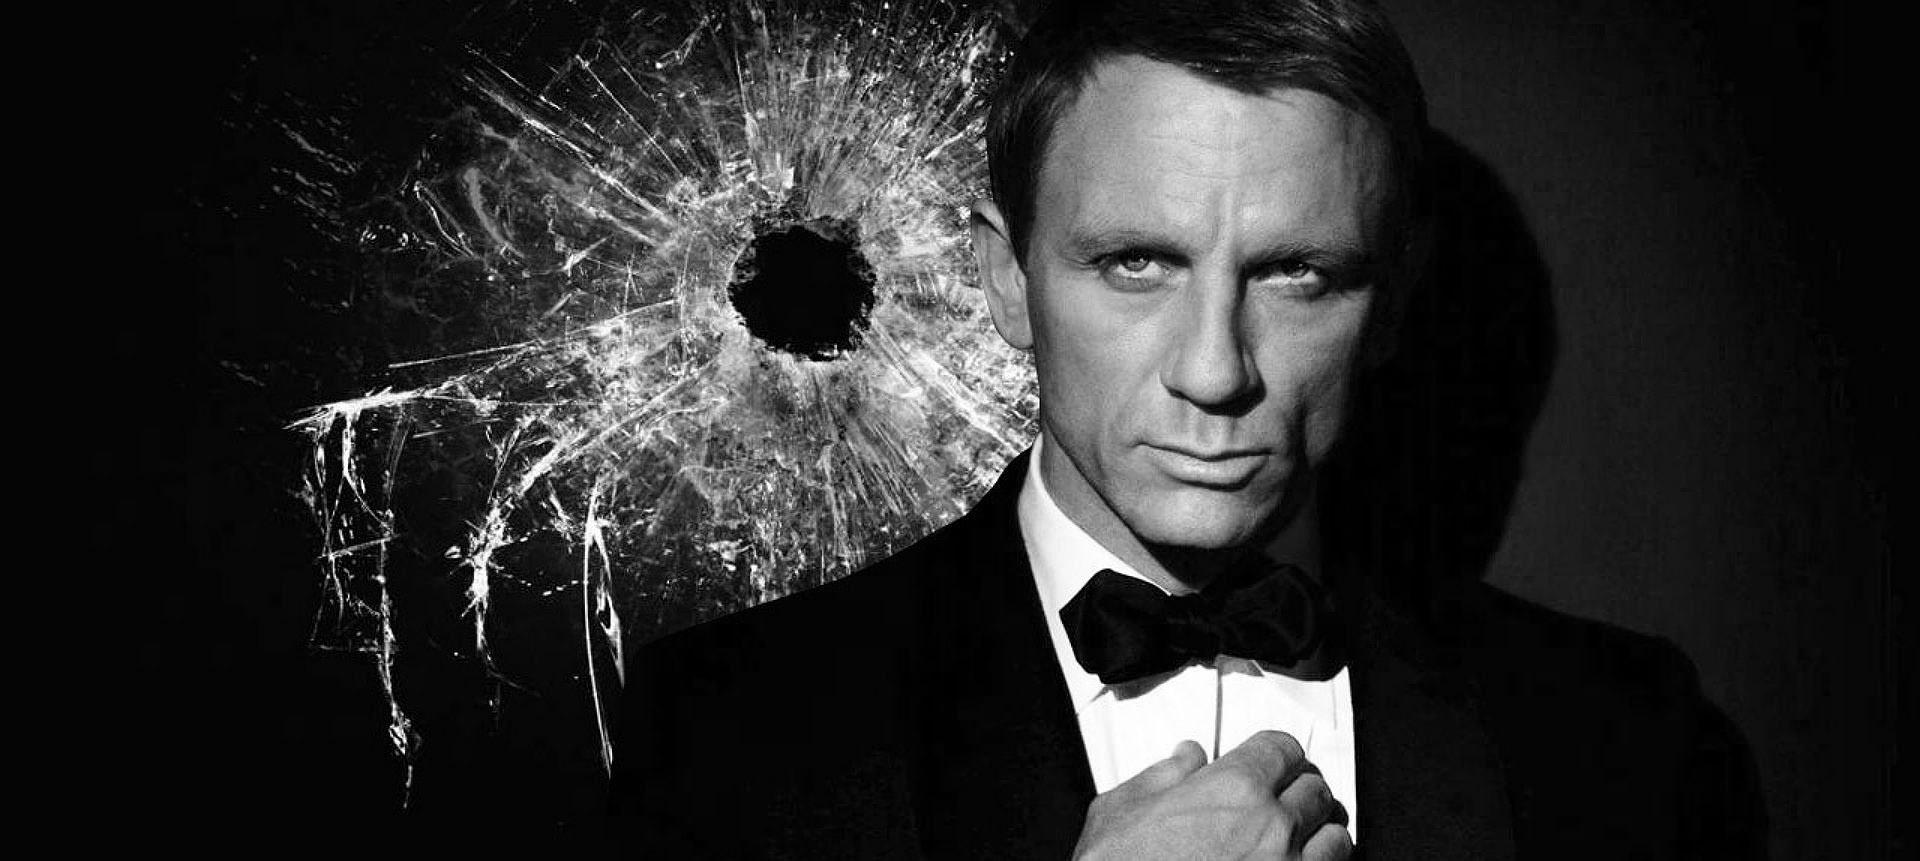 Explosões e ação em novo trailer de 007 contra SPECTRE